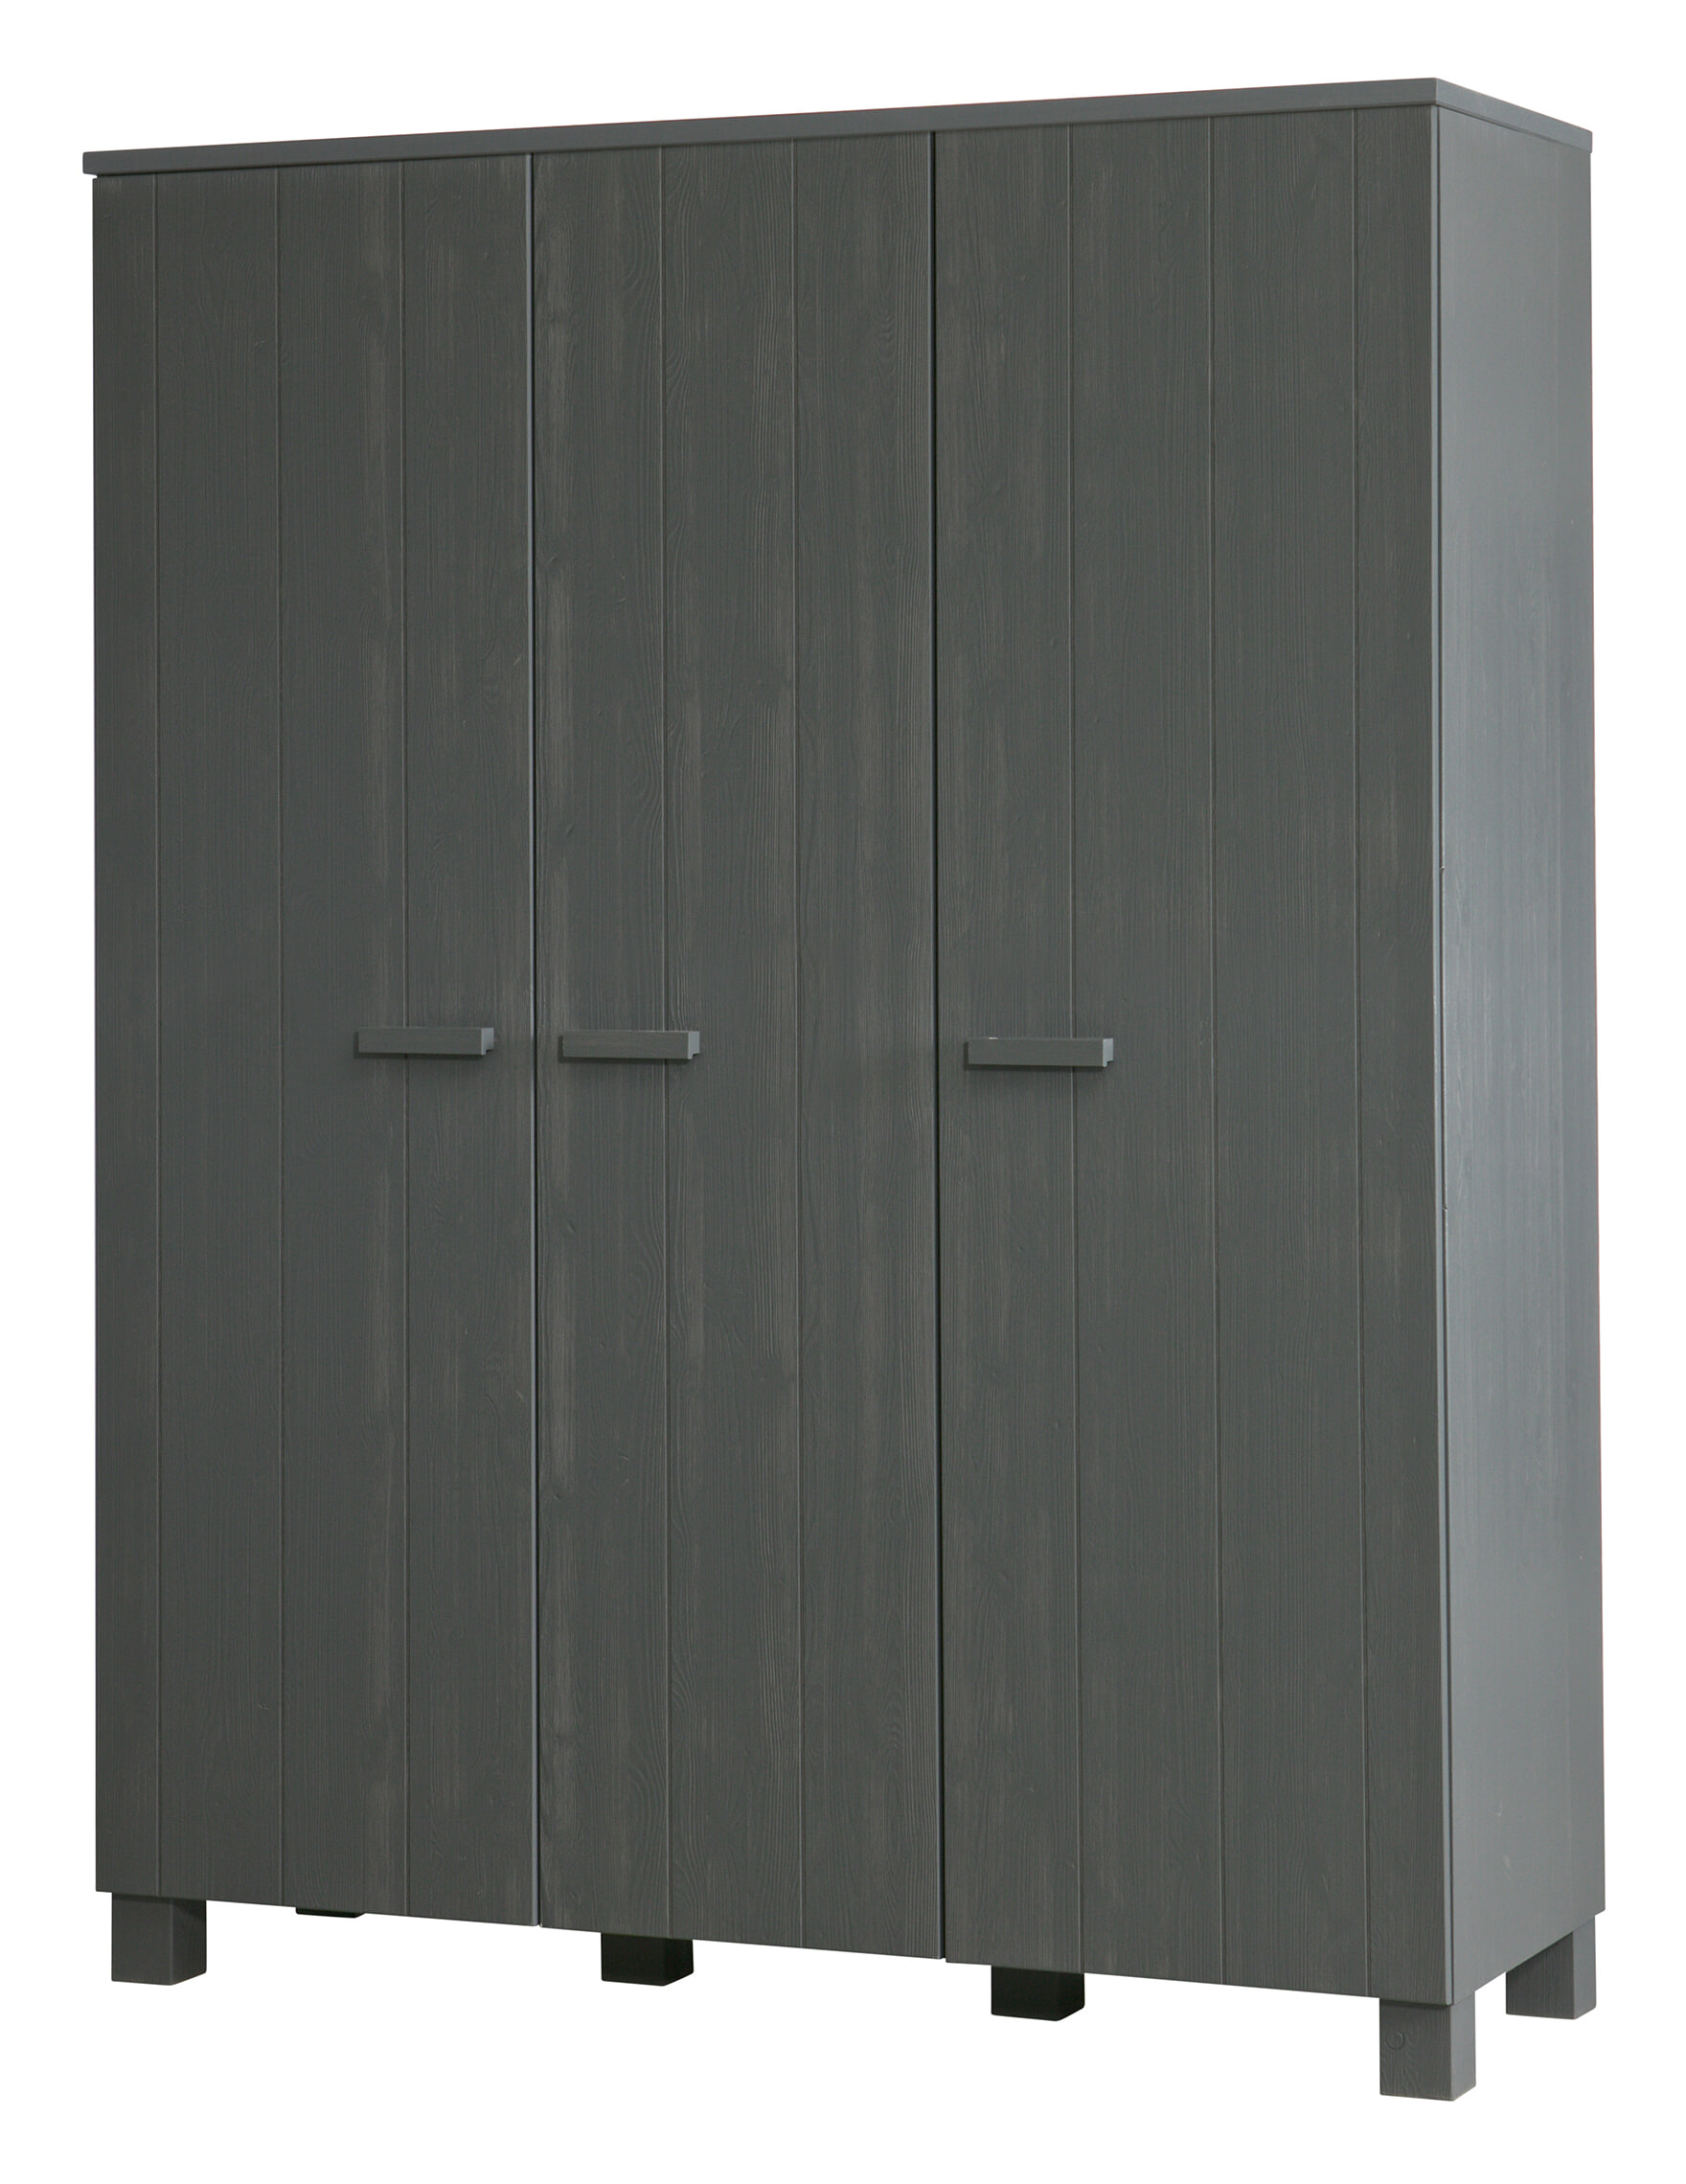 WOOOD Kledingkast 'Dennis' 3-deurs, kleur Steel grey